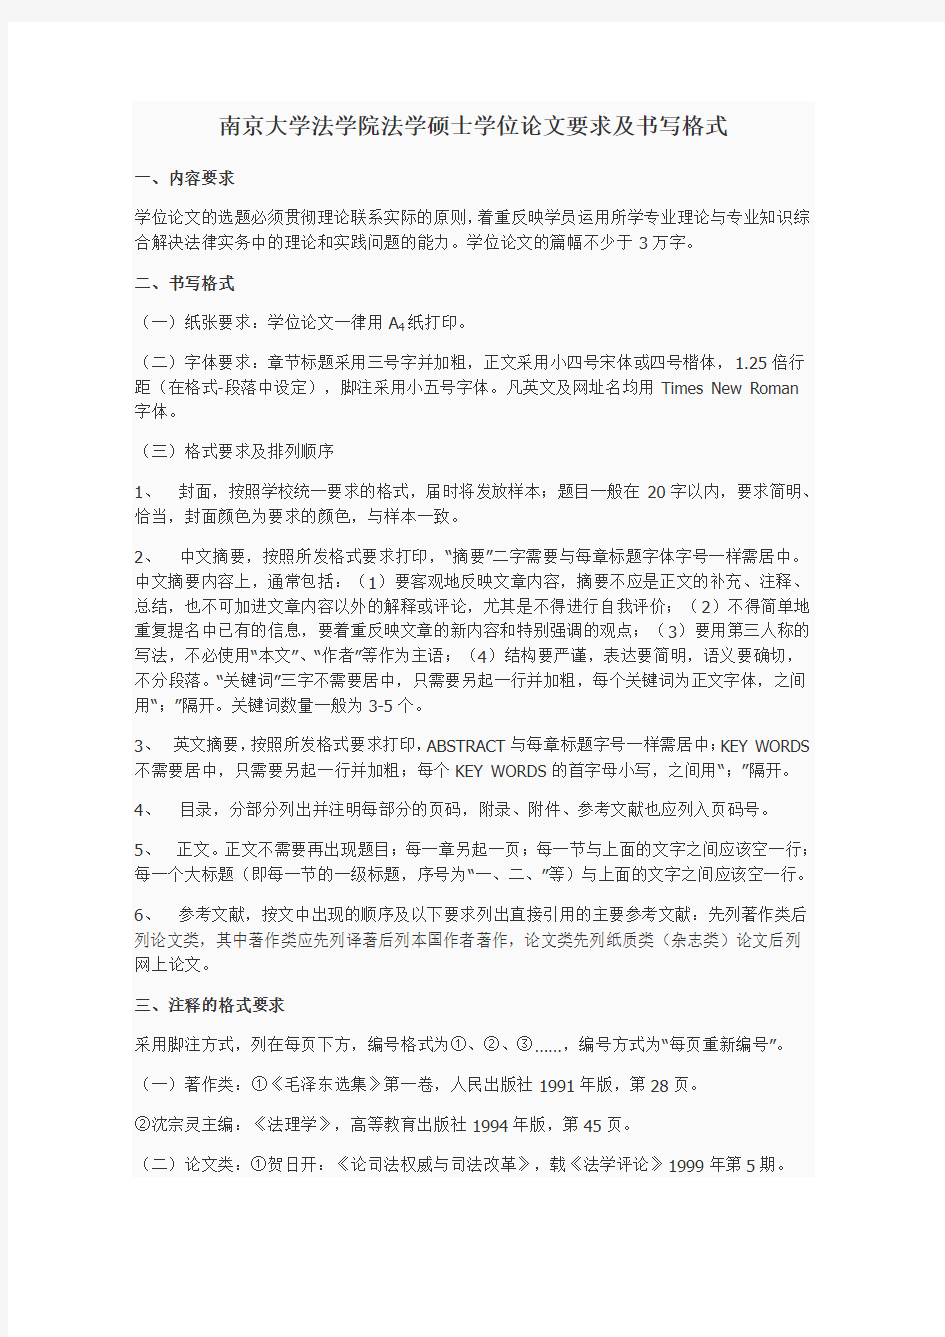 南京大学法学院法学硕士学位论文要求及书写格式